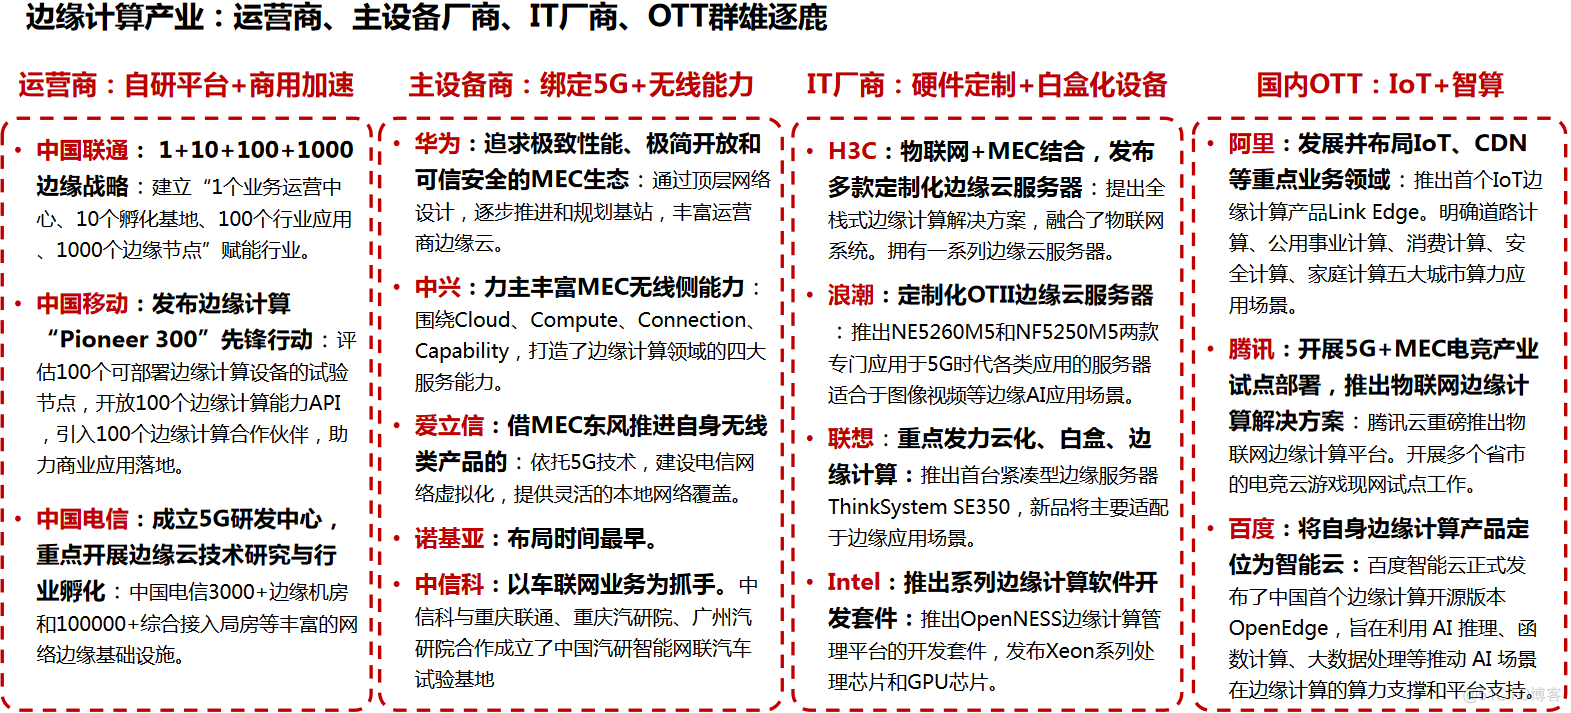 中国联通5G+MEC技术研究与业务实践_5g_03